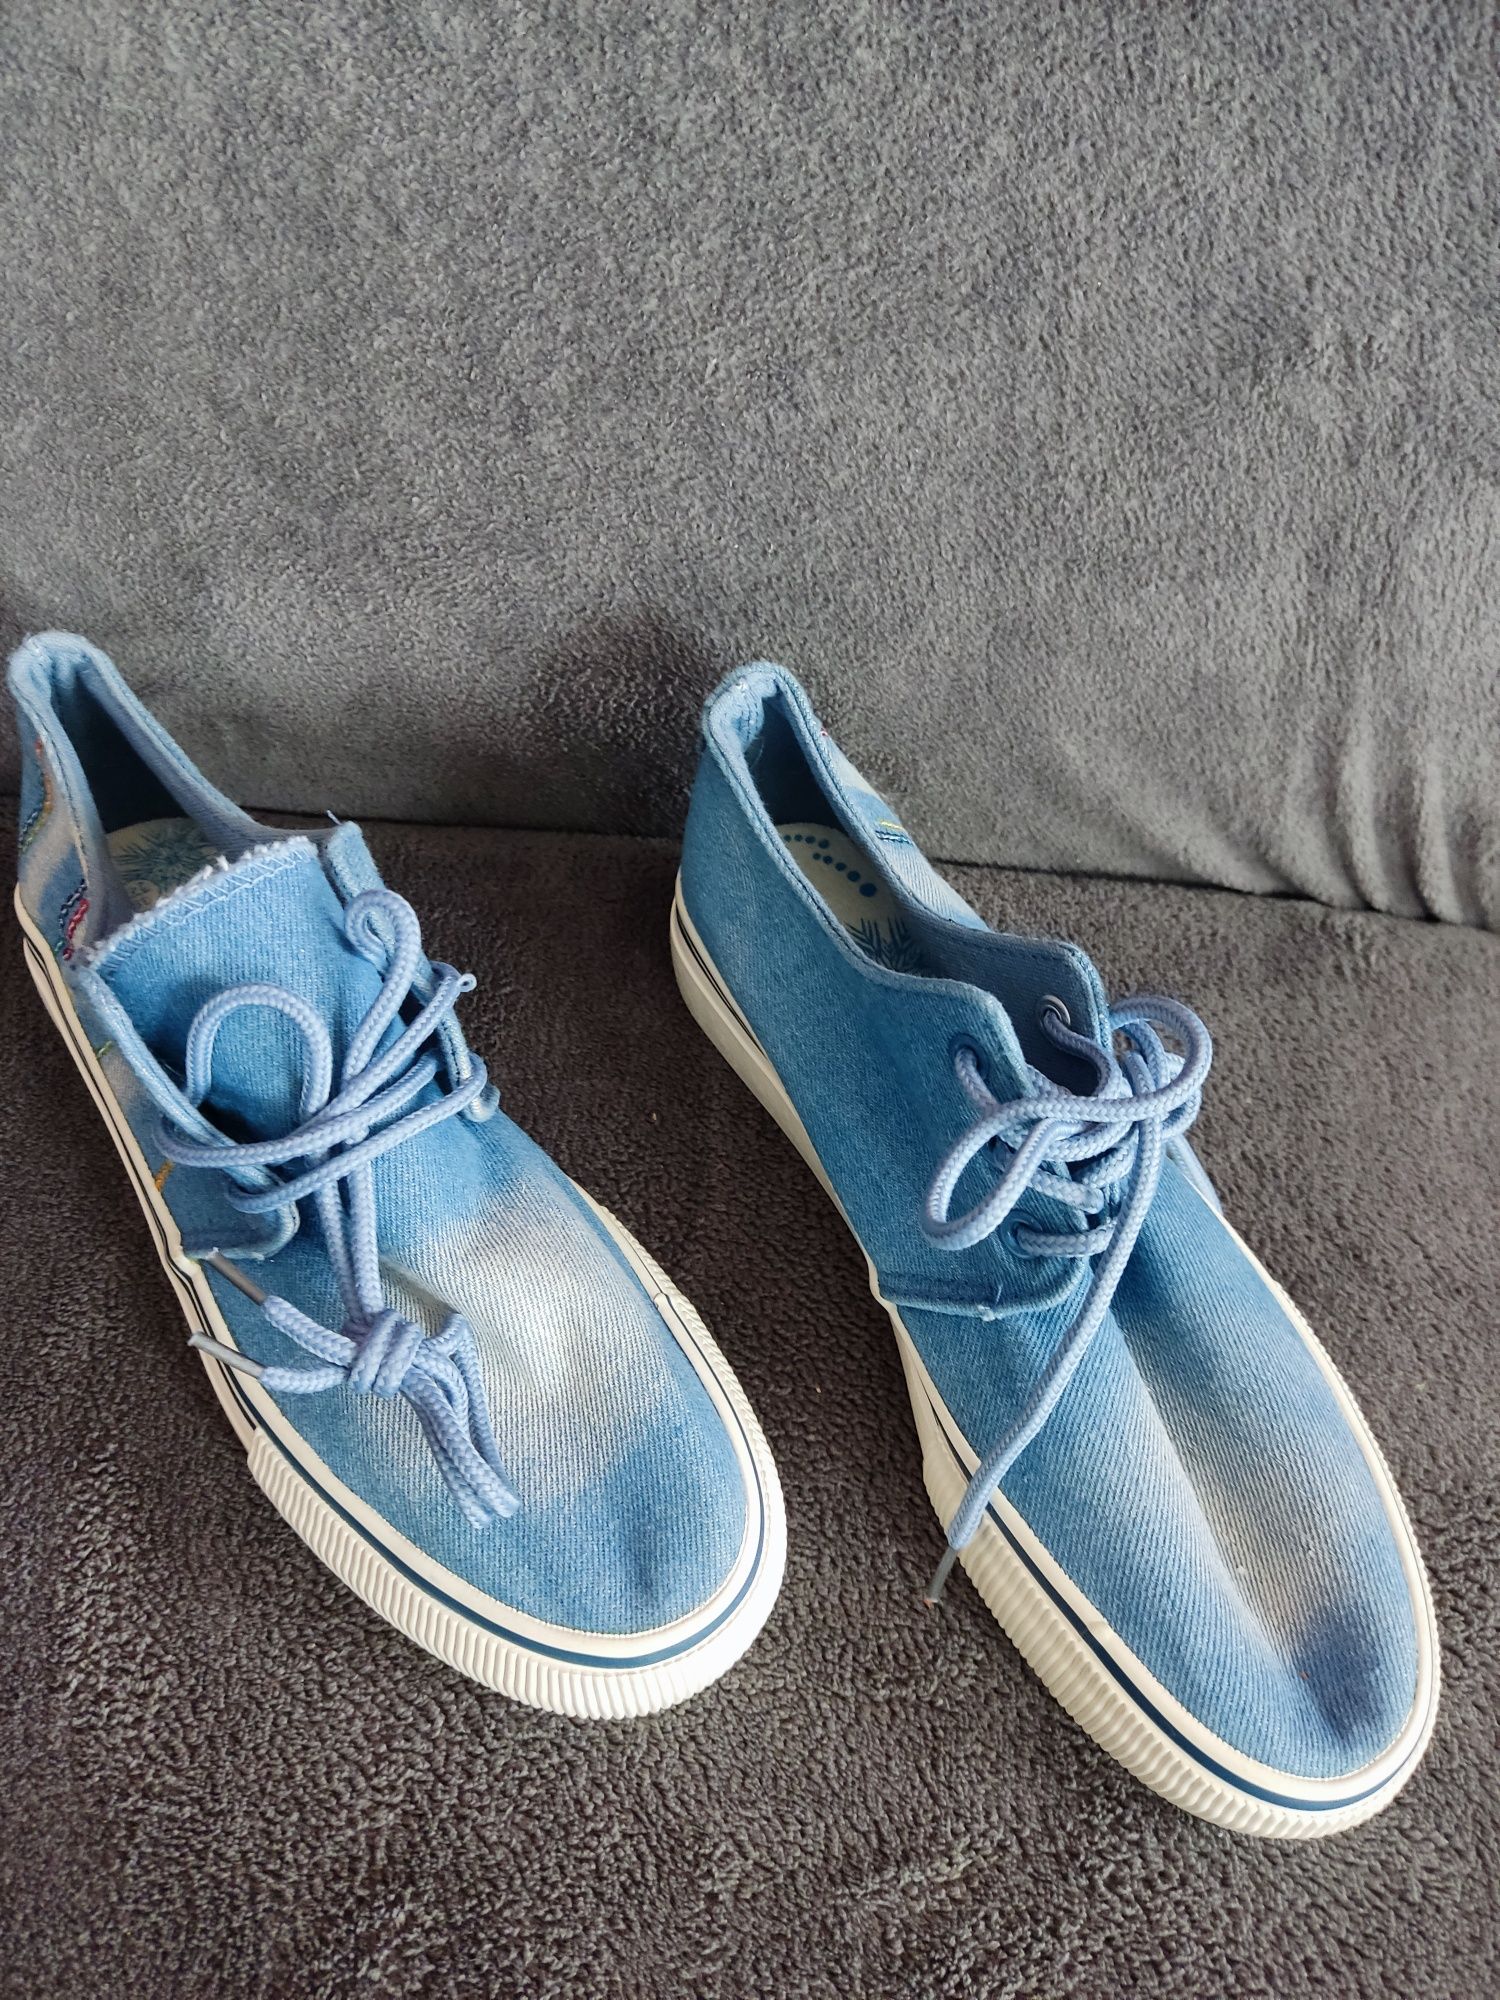 Tenesi/pantofi sport/adidași din denim albastru pt copii/fete-mar.38